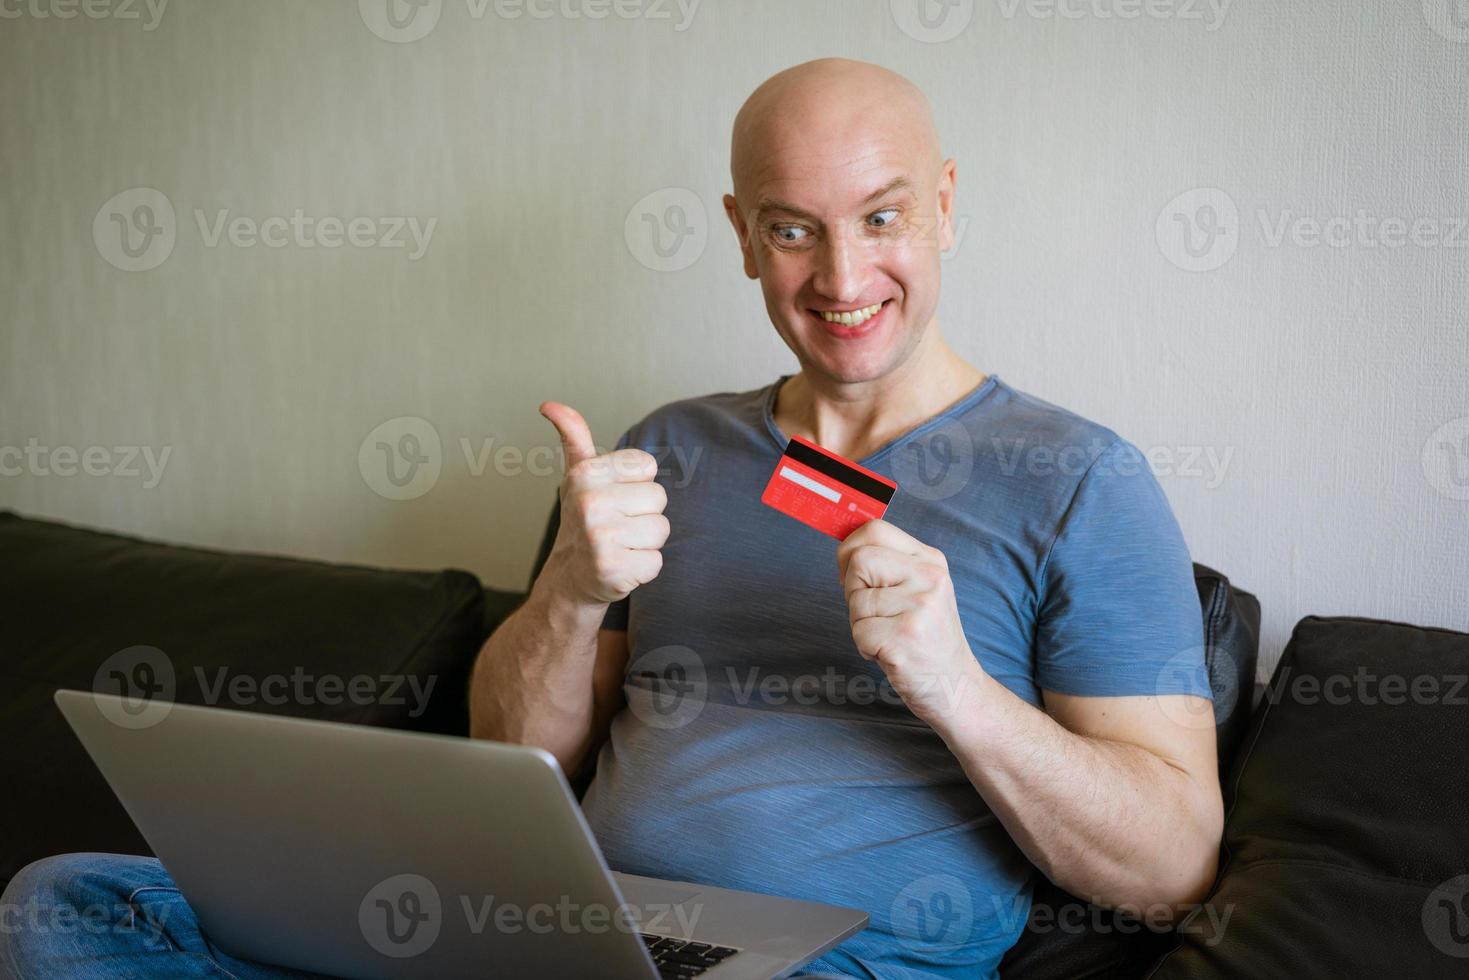 emotivo Calvo uomo su divano con il computer portatile e credito carta nel mano foto